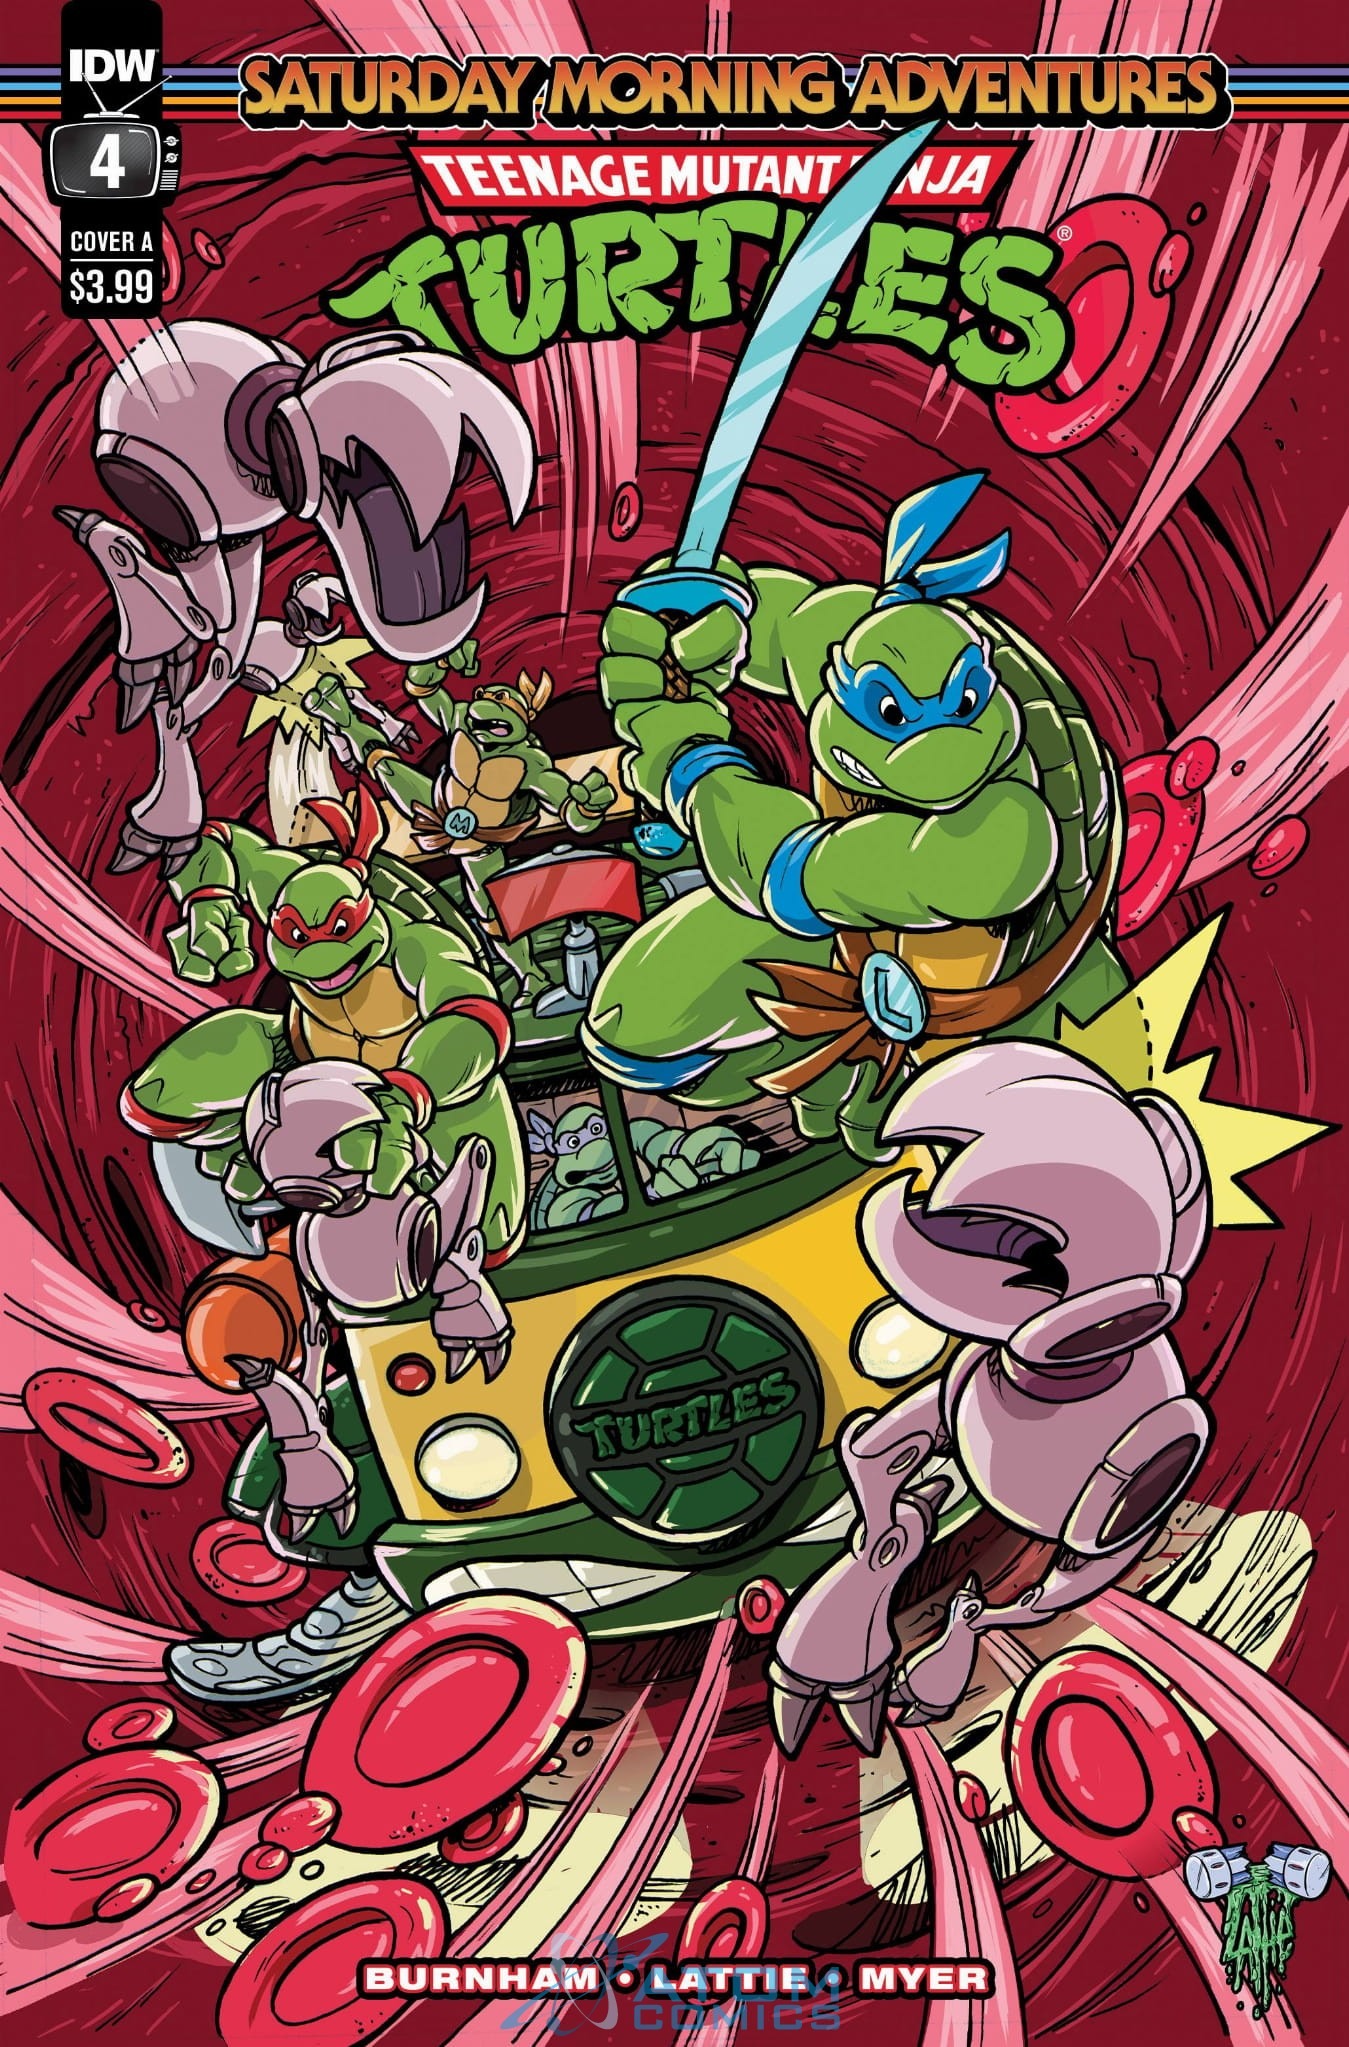 忍者神龟 周六的早晨 冒险 Teenage Mutant Ninja Turtles: Saturday Morning Adventures